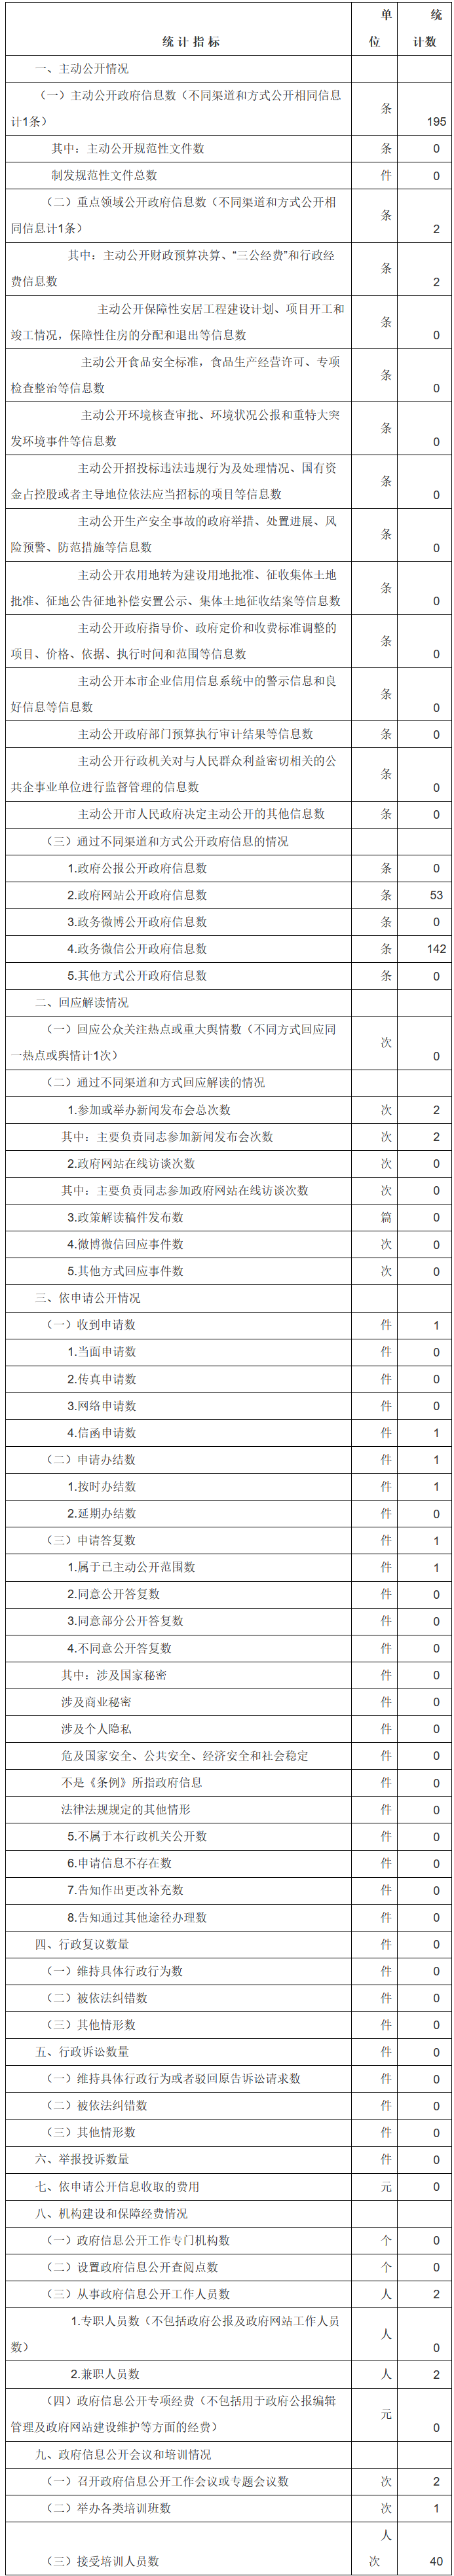 北京市人民政府外事办公室政府信息公开情况统计表(2017年度)